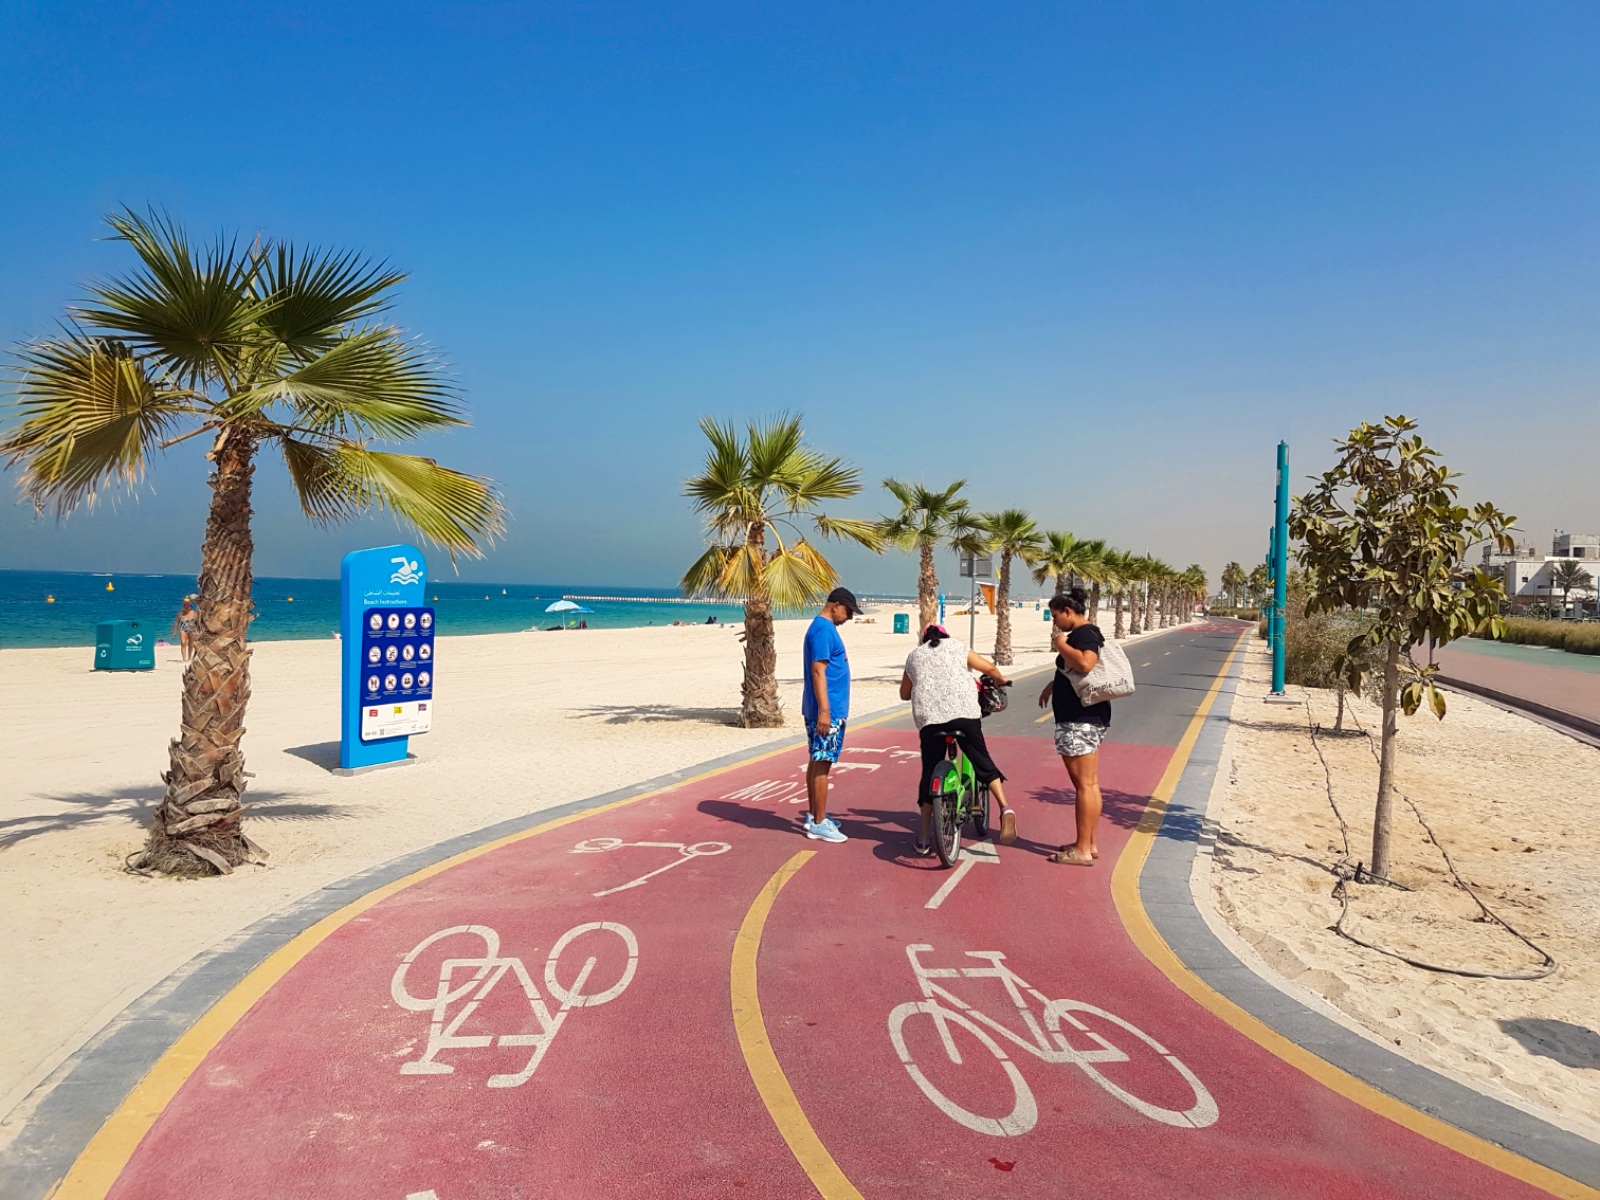 Bike rental in Dubai - Jumeirah Beach cycling track